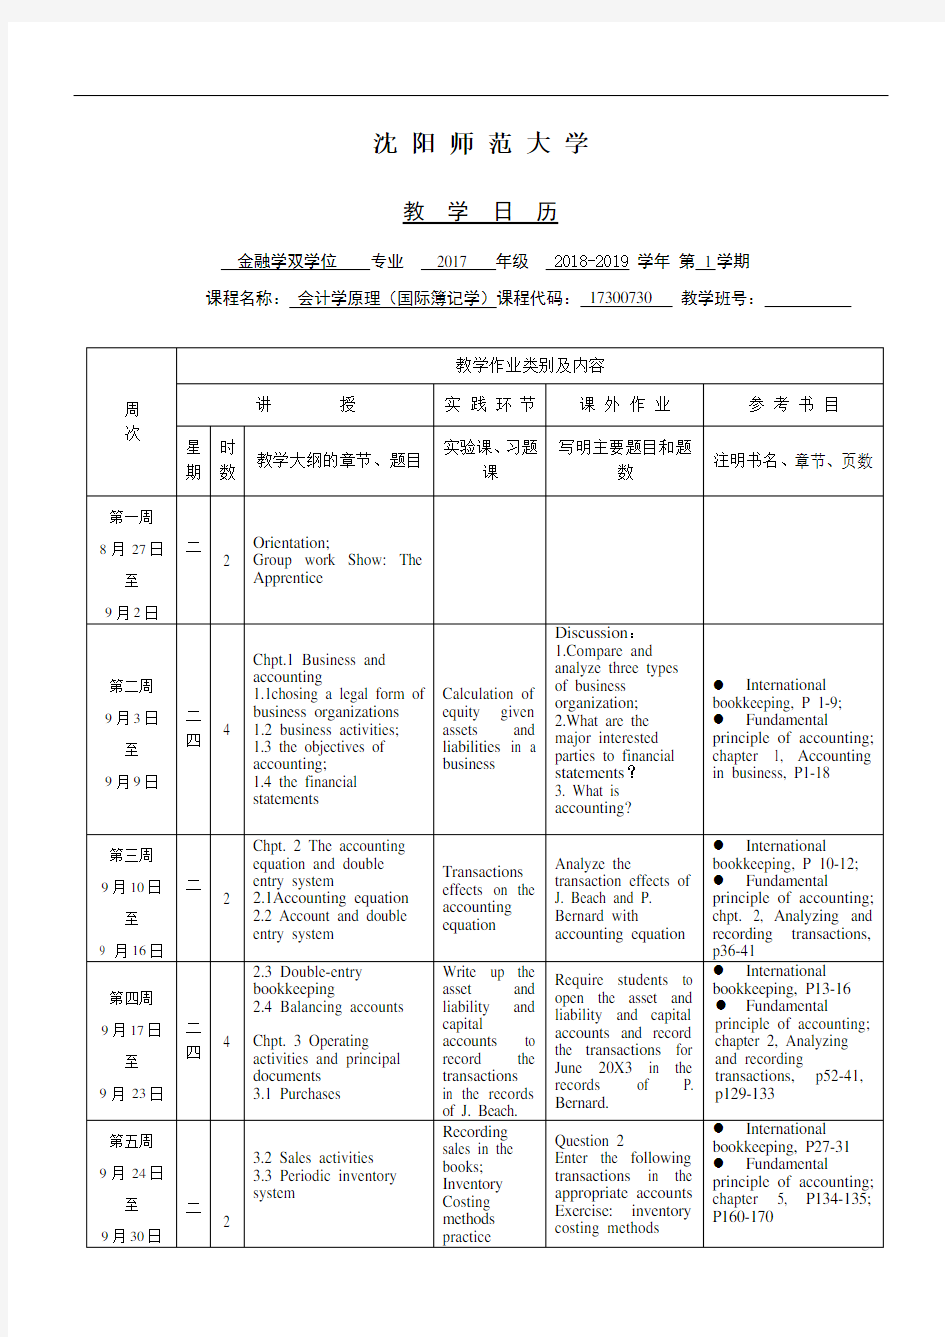 张弦 会计学原理(国际簿记学)教学日历2018-2019(1)